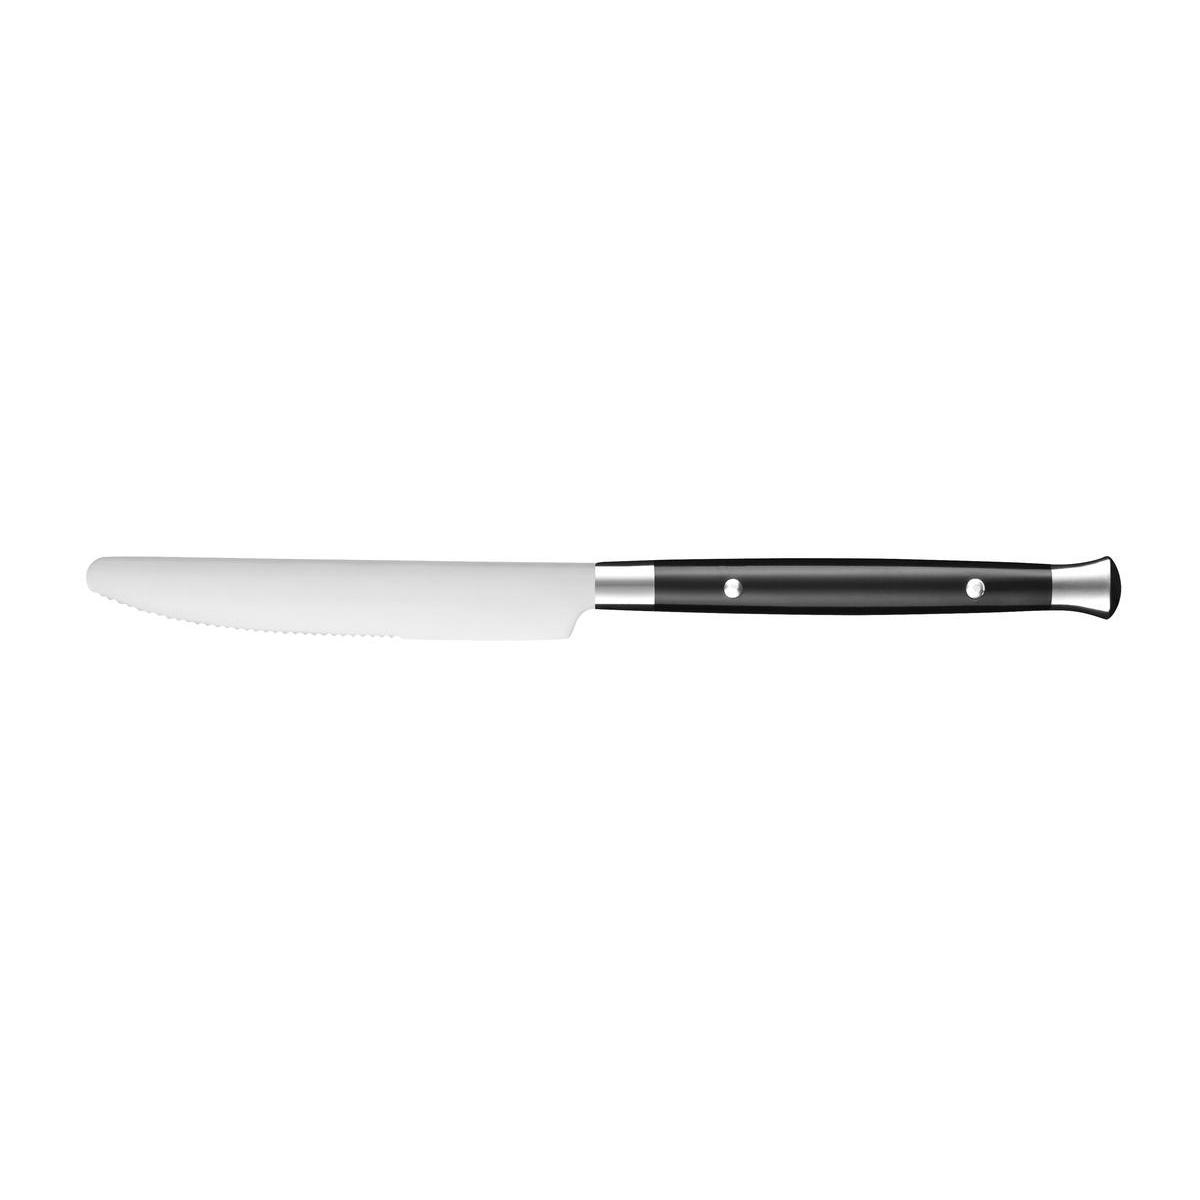 Couteau table bistro - Acier inoxydable - 21,5 cm - Noir